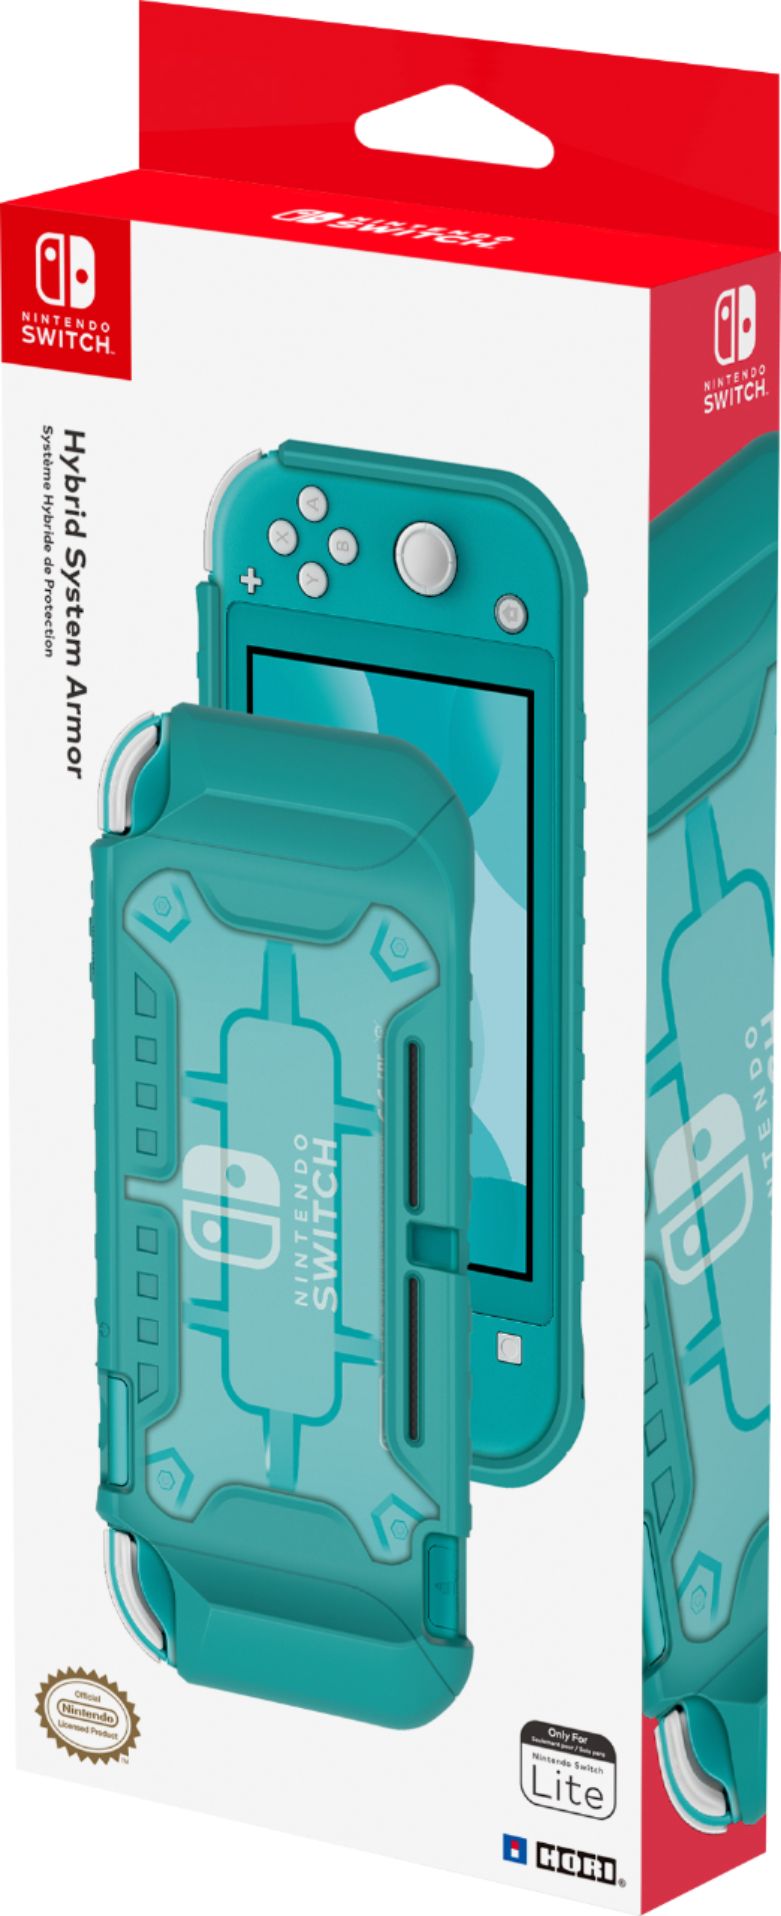 HORI NS2-012U LITE ETUI TASCHE (BLAU) Zubehör für Nintendo Switch Lite,  Blau